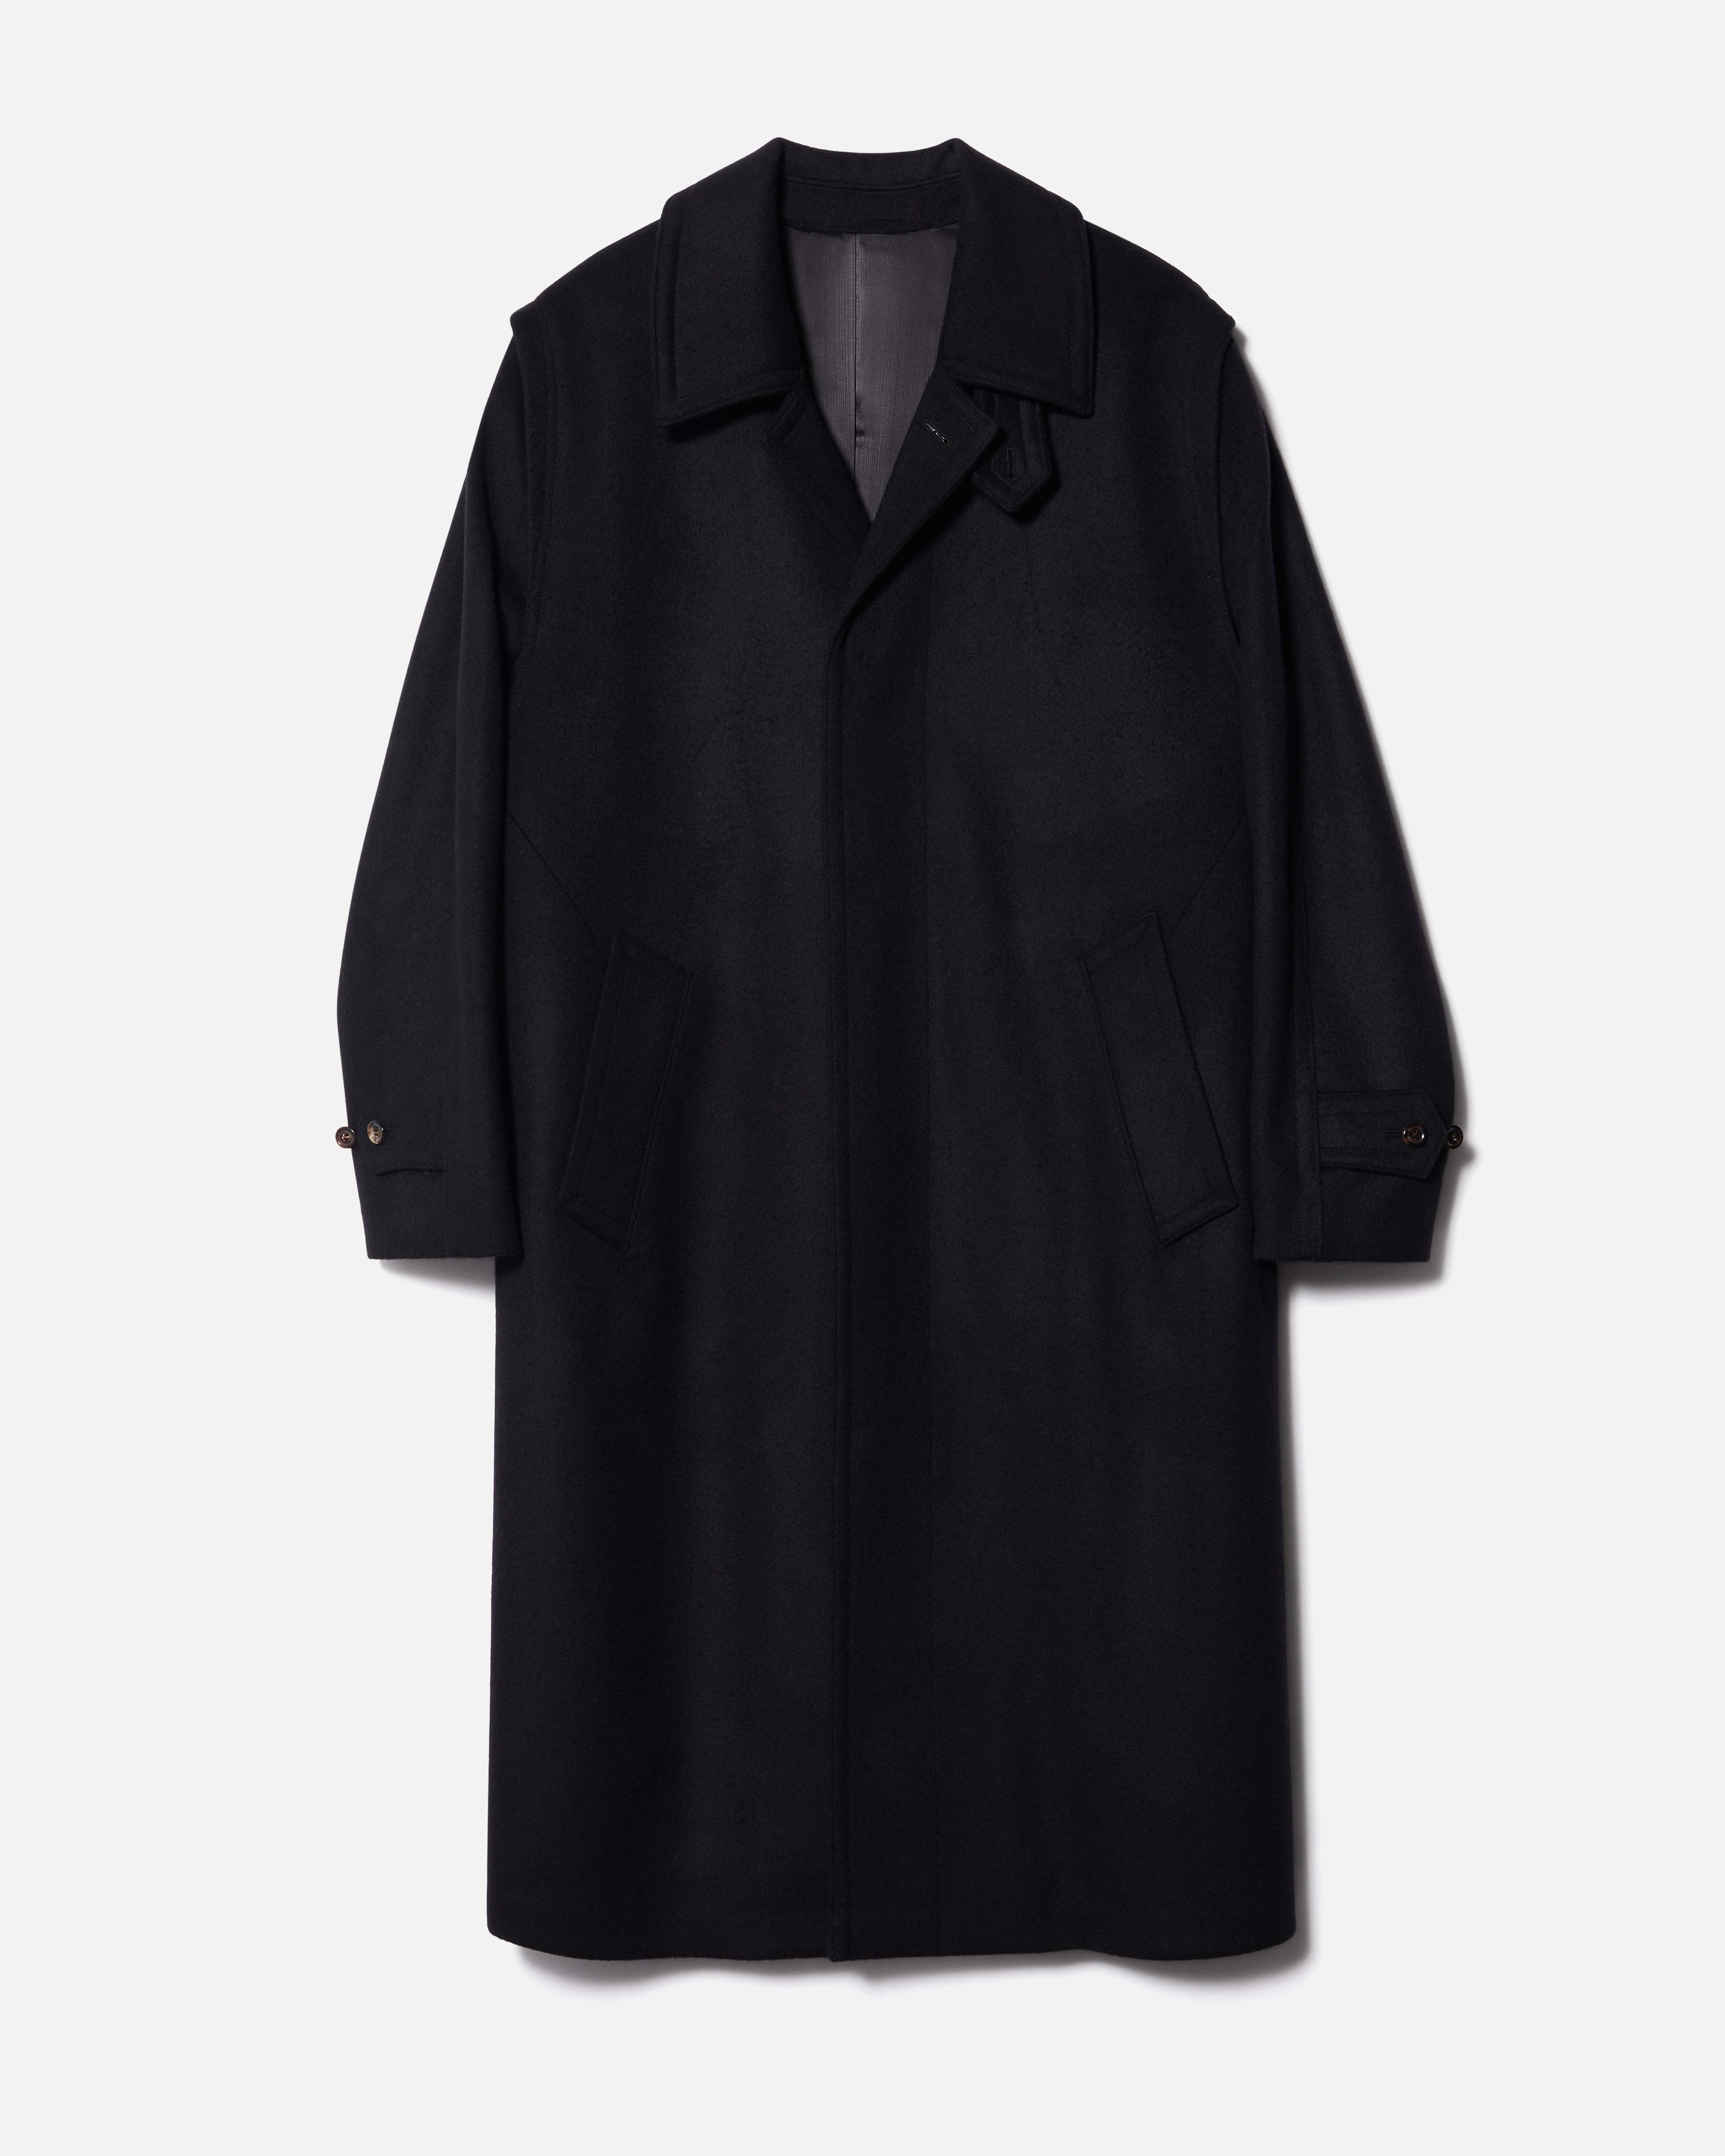 rier coat black - ステンカラーコート